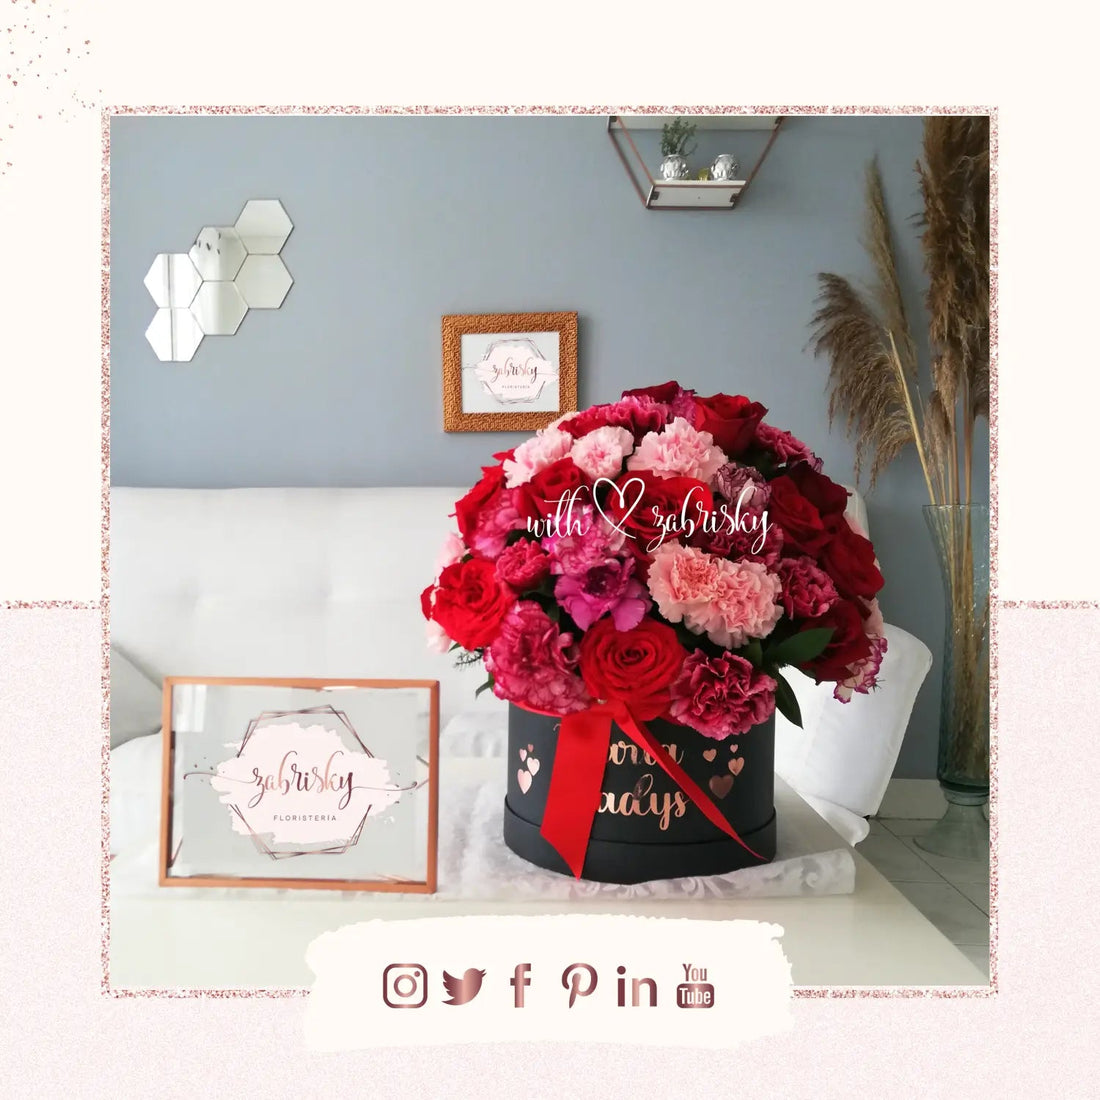 Hermosas #flores y #detalles conmemoración #diadelamujer - Floristería Zabrisky